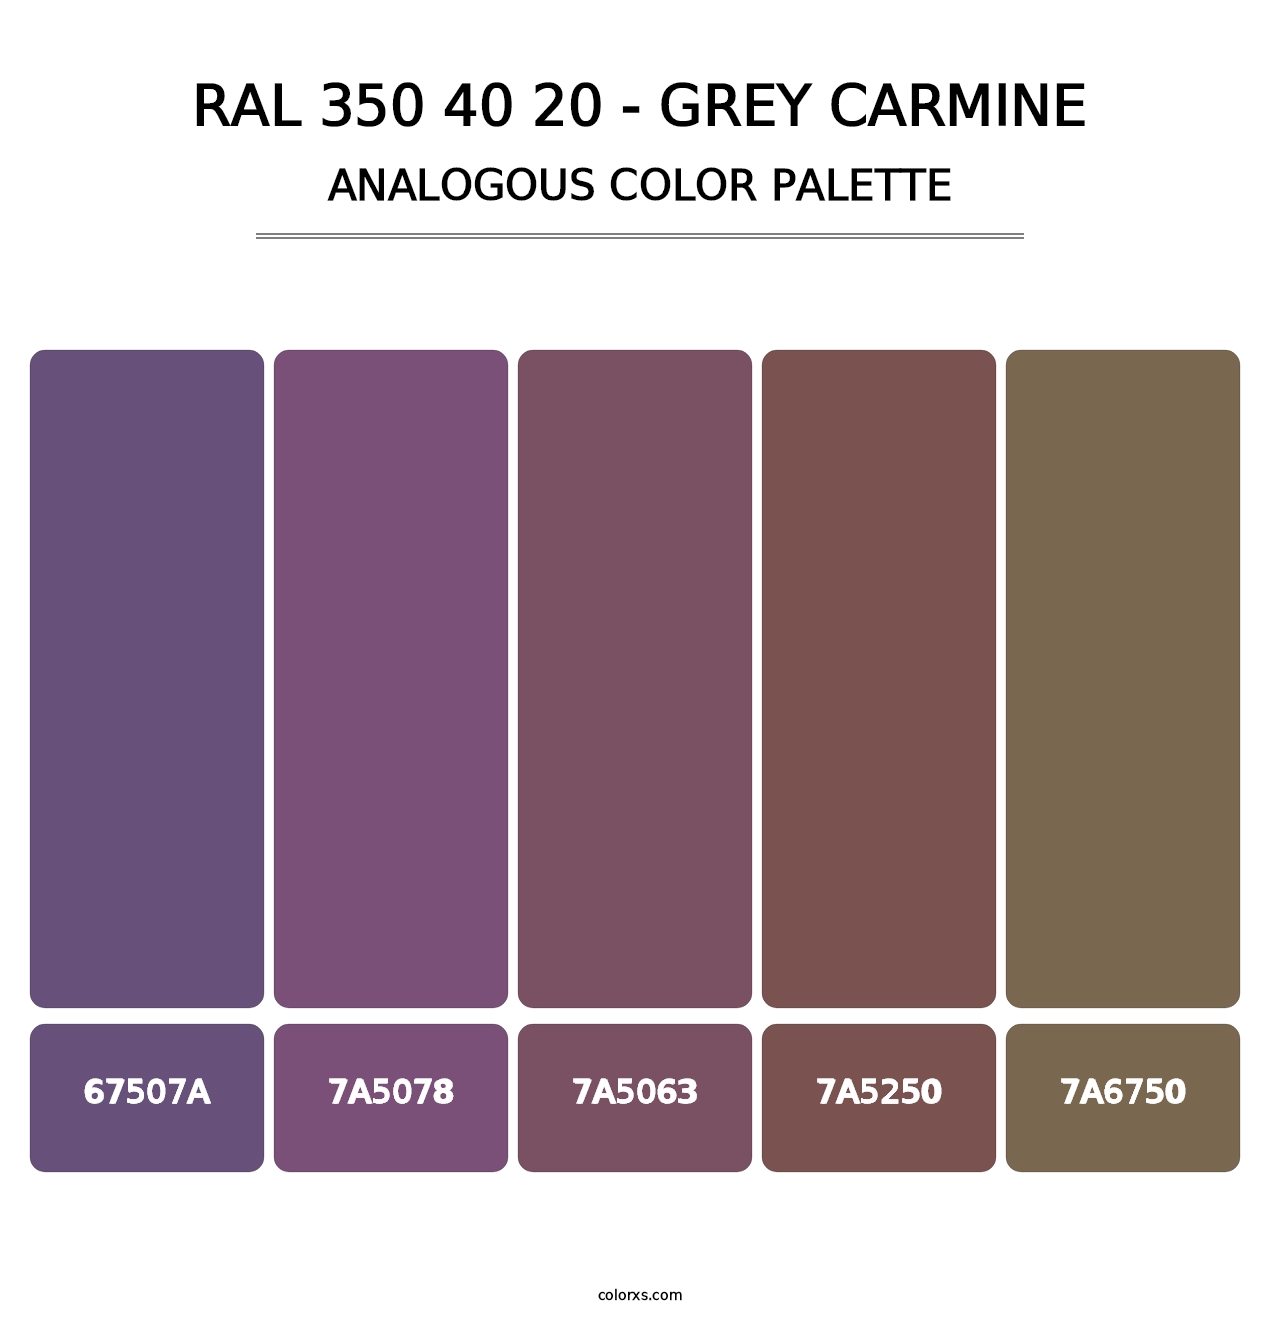 RAL 350 40 20 - Grey Carmine - Analogous Color Palette